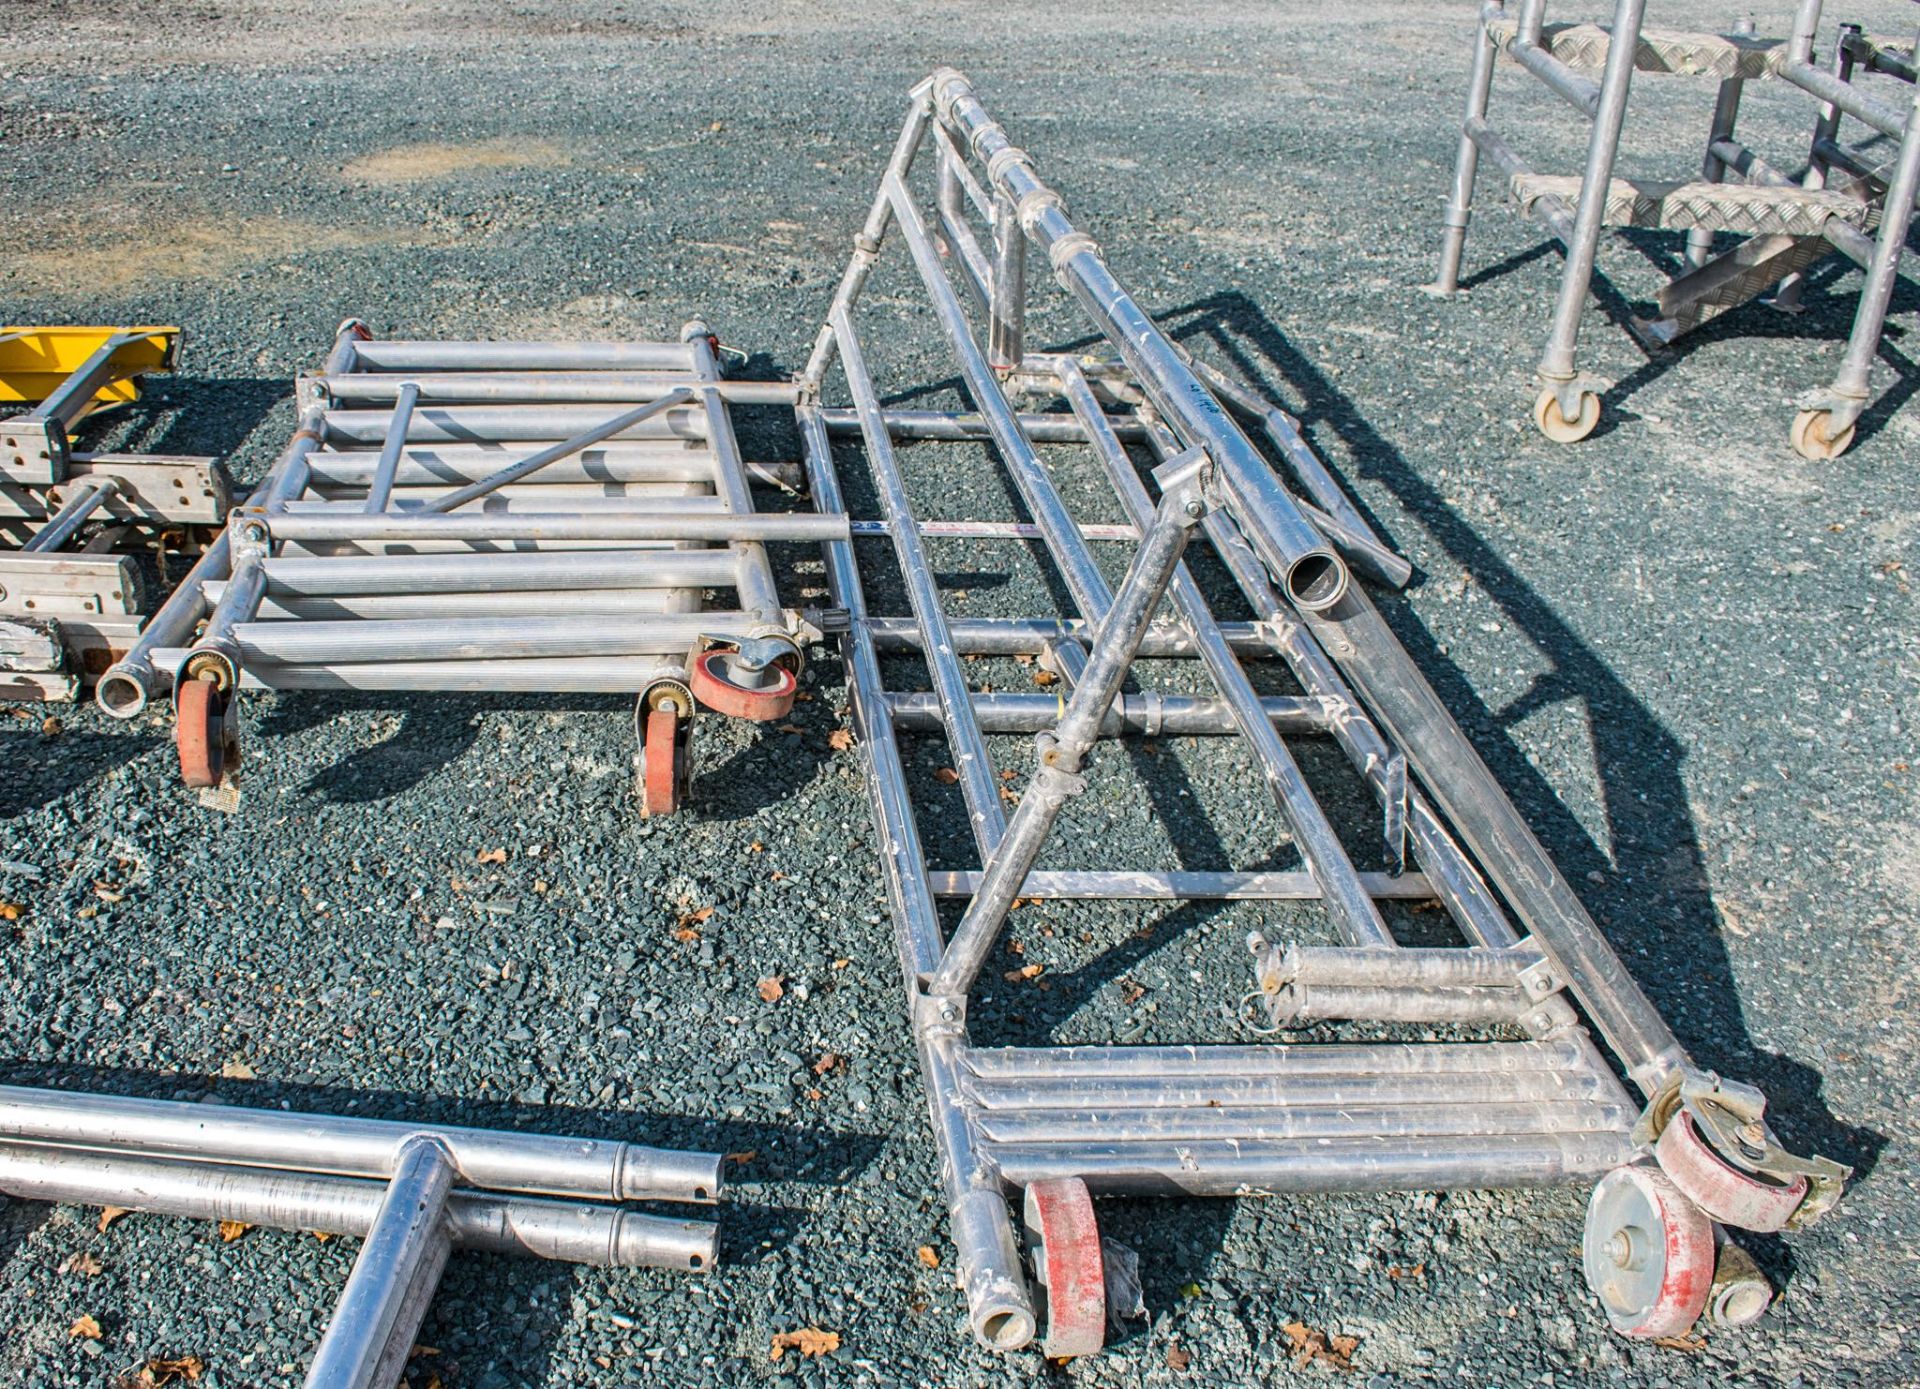 2 - damaged aluminium podiums